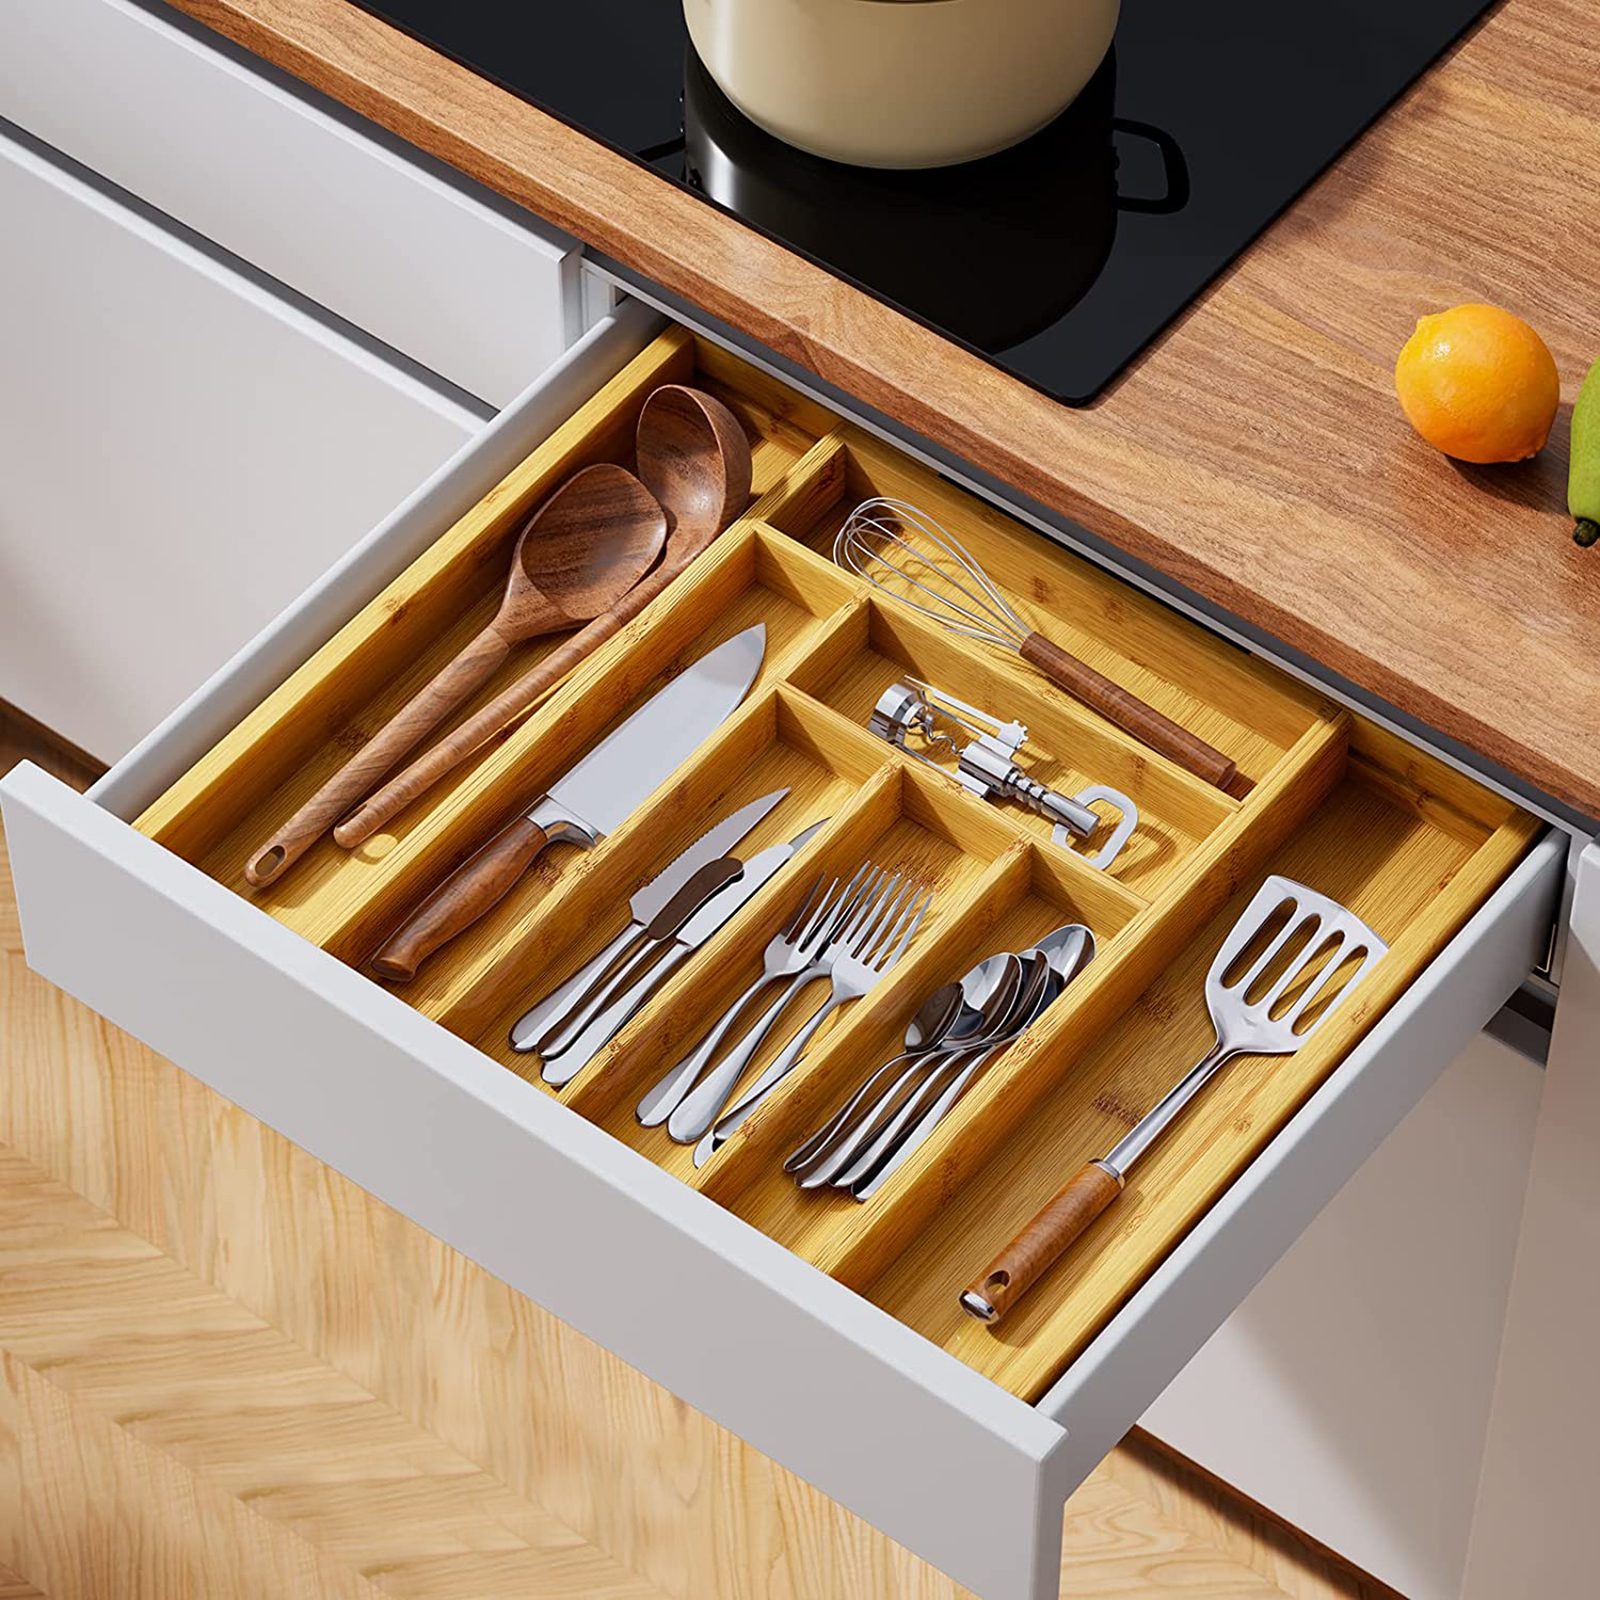 25 Best Kitchen Storage Ideas - Smart, Easy Storage Solutions for